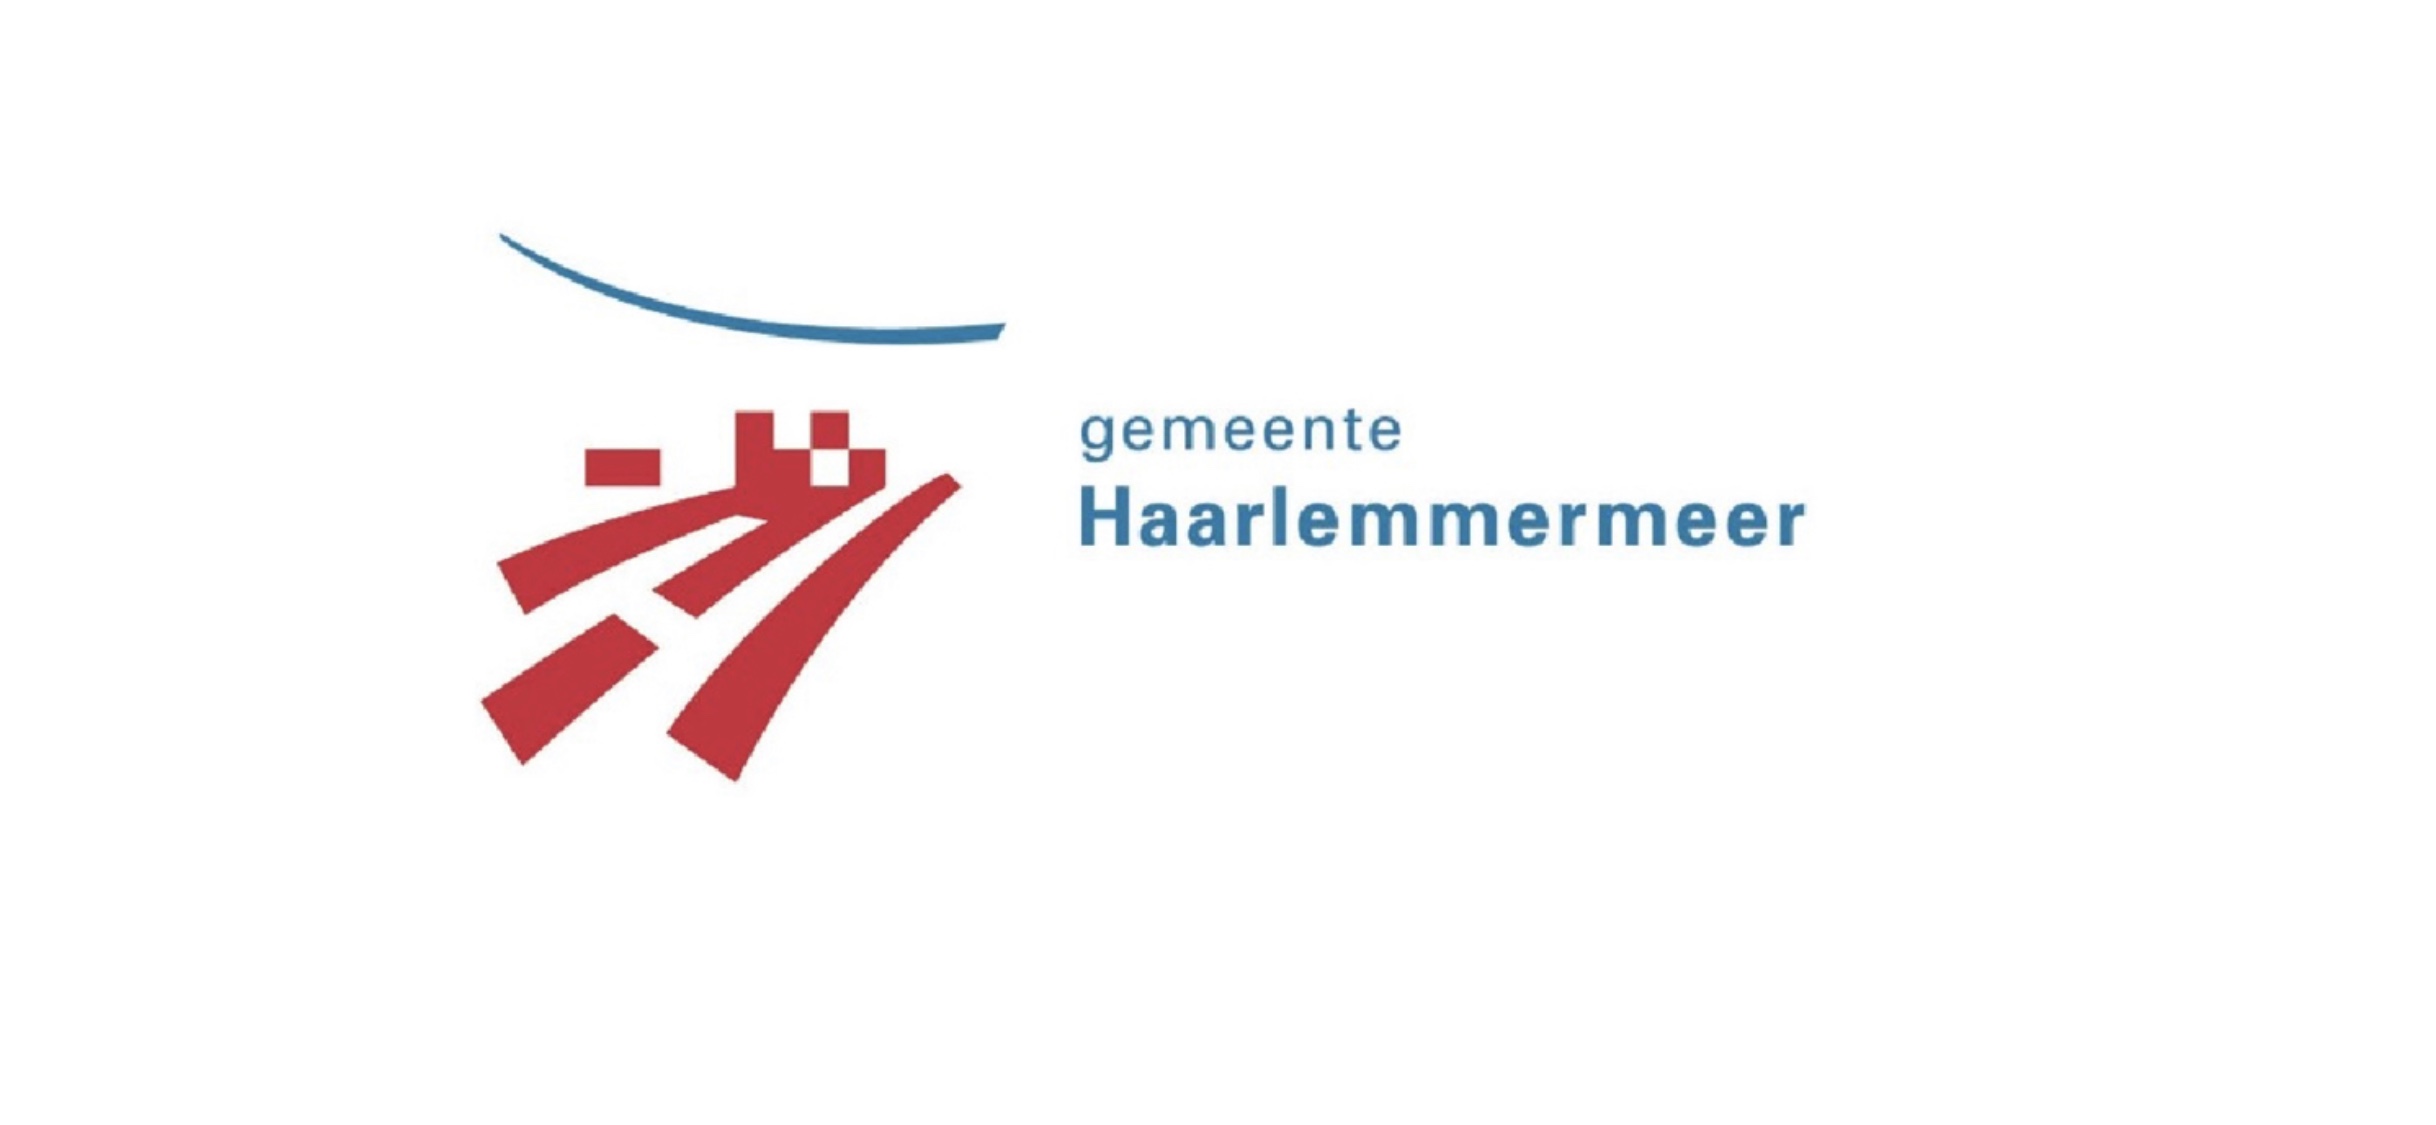 Workshops over ‘straatcultuur en criminaliteit’ op themabijeenkomst Jeugd voor professionals uit zorg- en veiligheidsketen van gemeente Haarlemmermeer (2020)